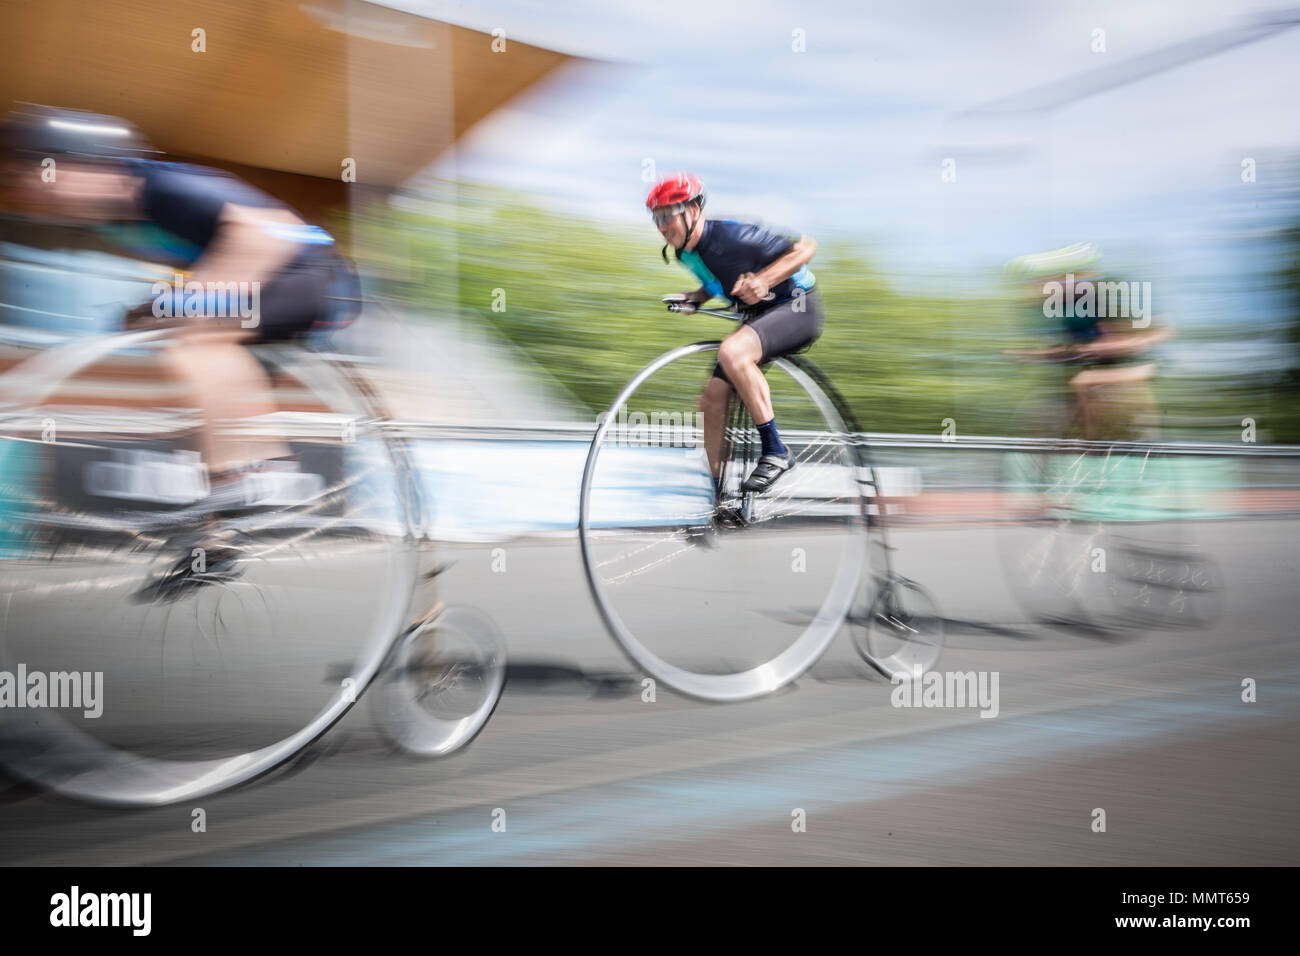 Londres, Royaume-Uni. 13 mai, 2018. Les membres de la Penny Farthing cycling club effectuer piste de course à Herne Hill vélodrome. Crédit : Guy Josse/Alamy Live News Banque D'Images